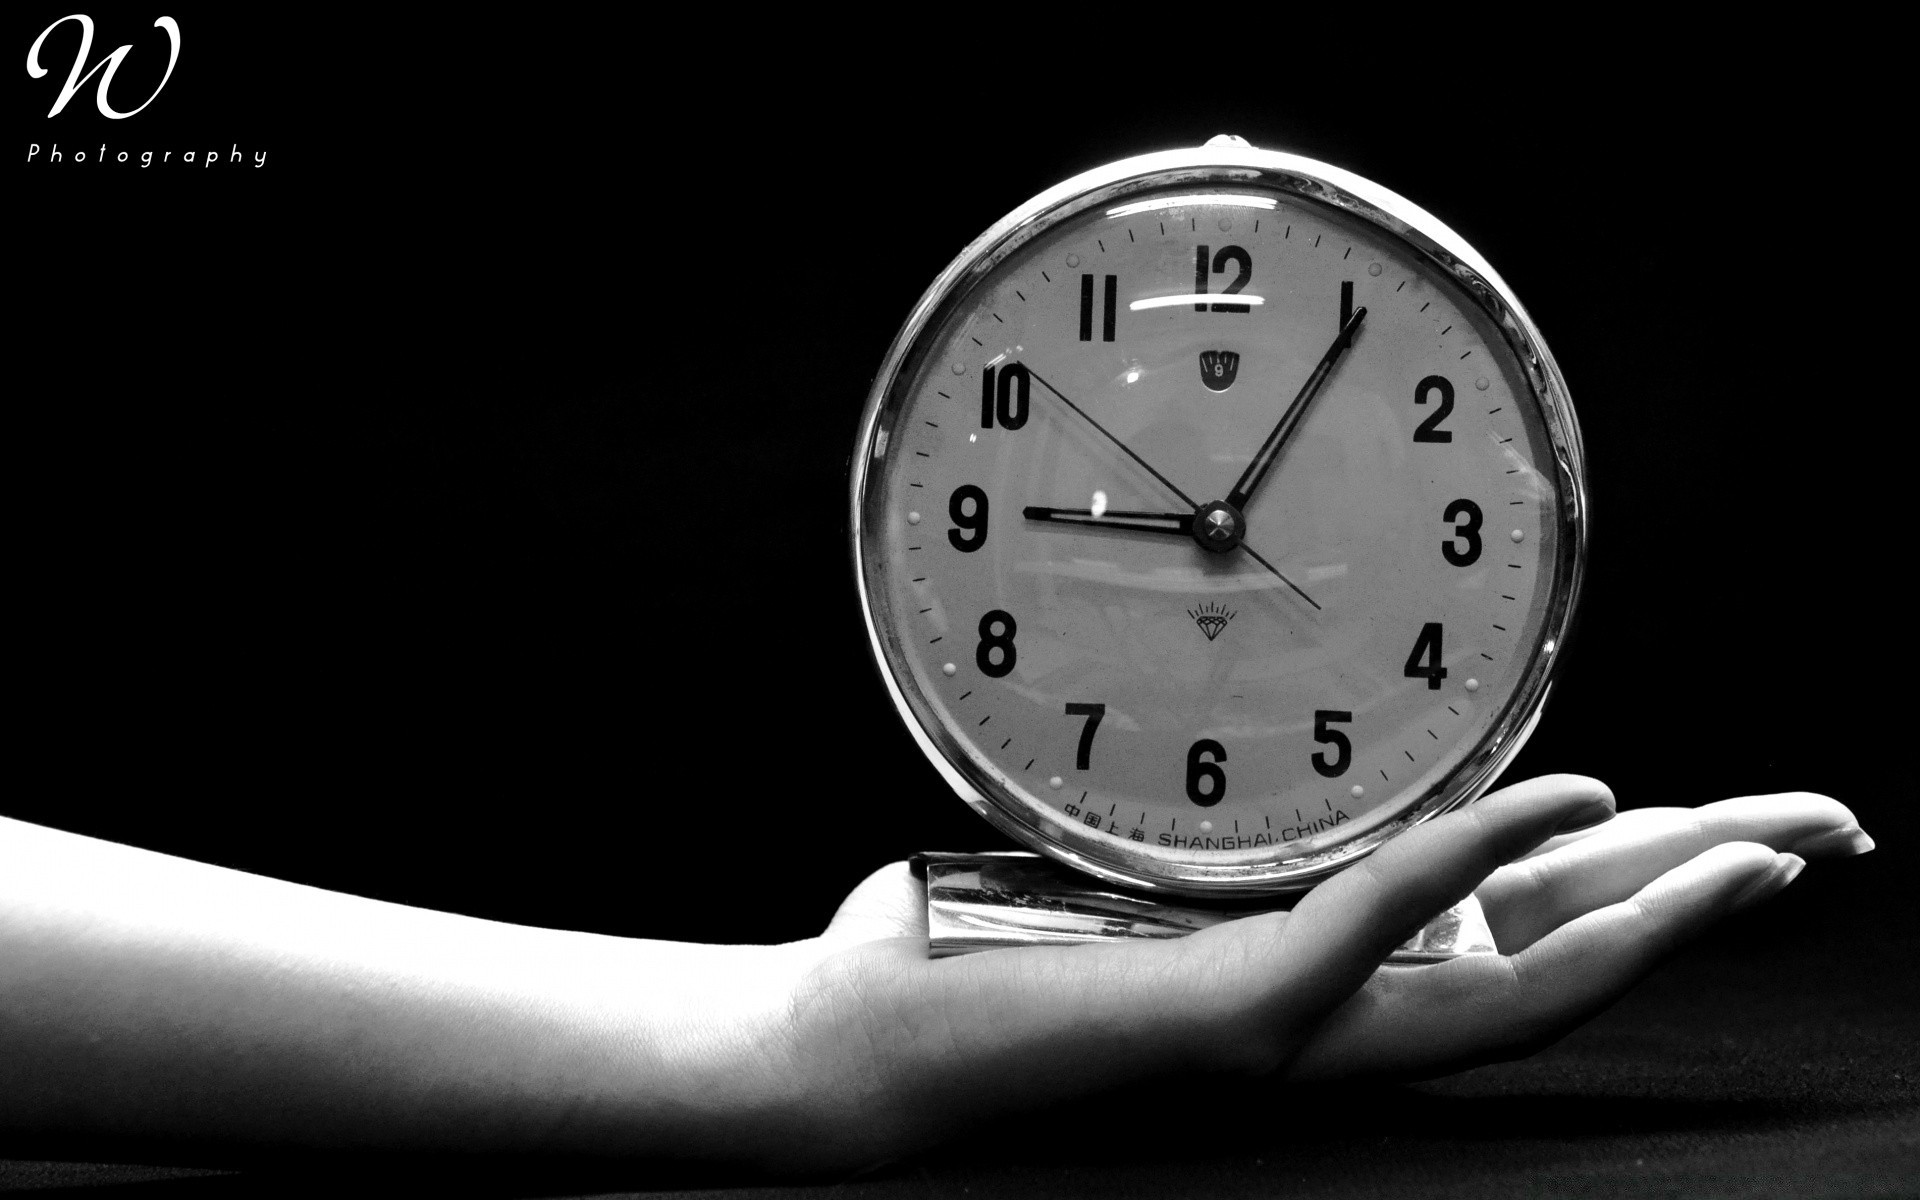 черно-белое время часы срок смотреть будильник минуту поздно точность таймер обратный отсчет давление актуальность классический